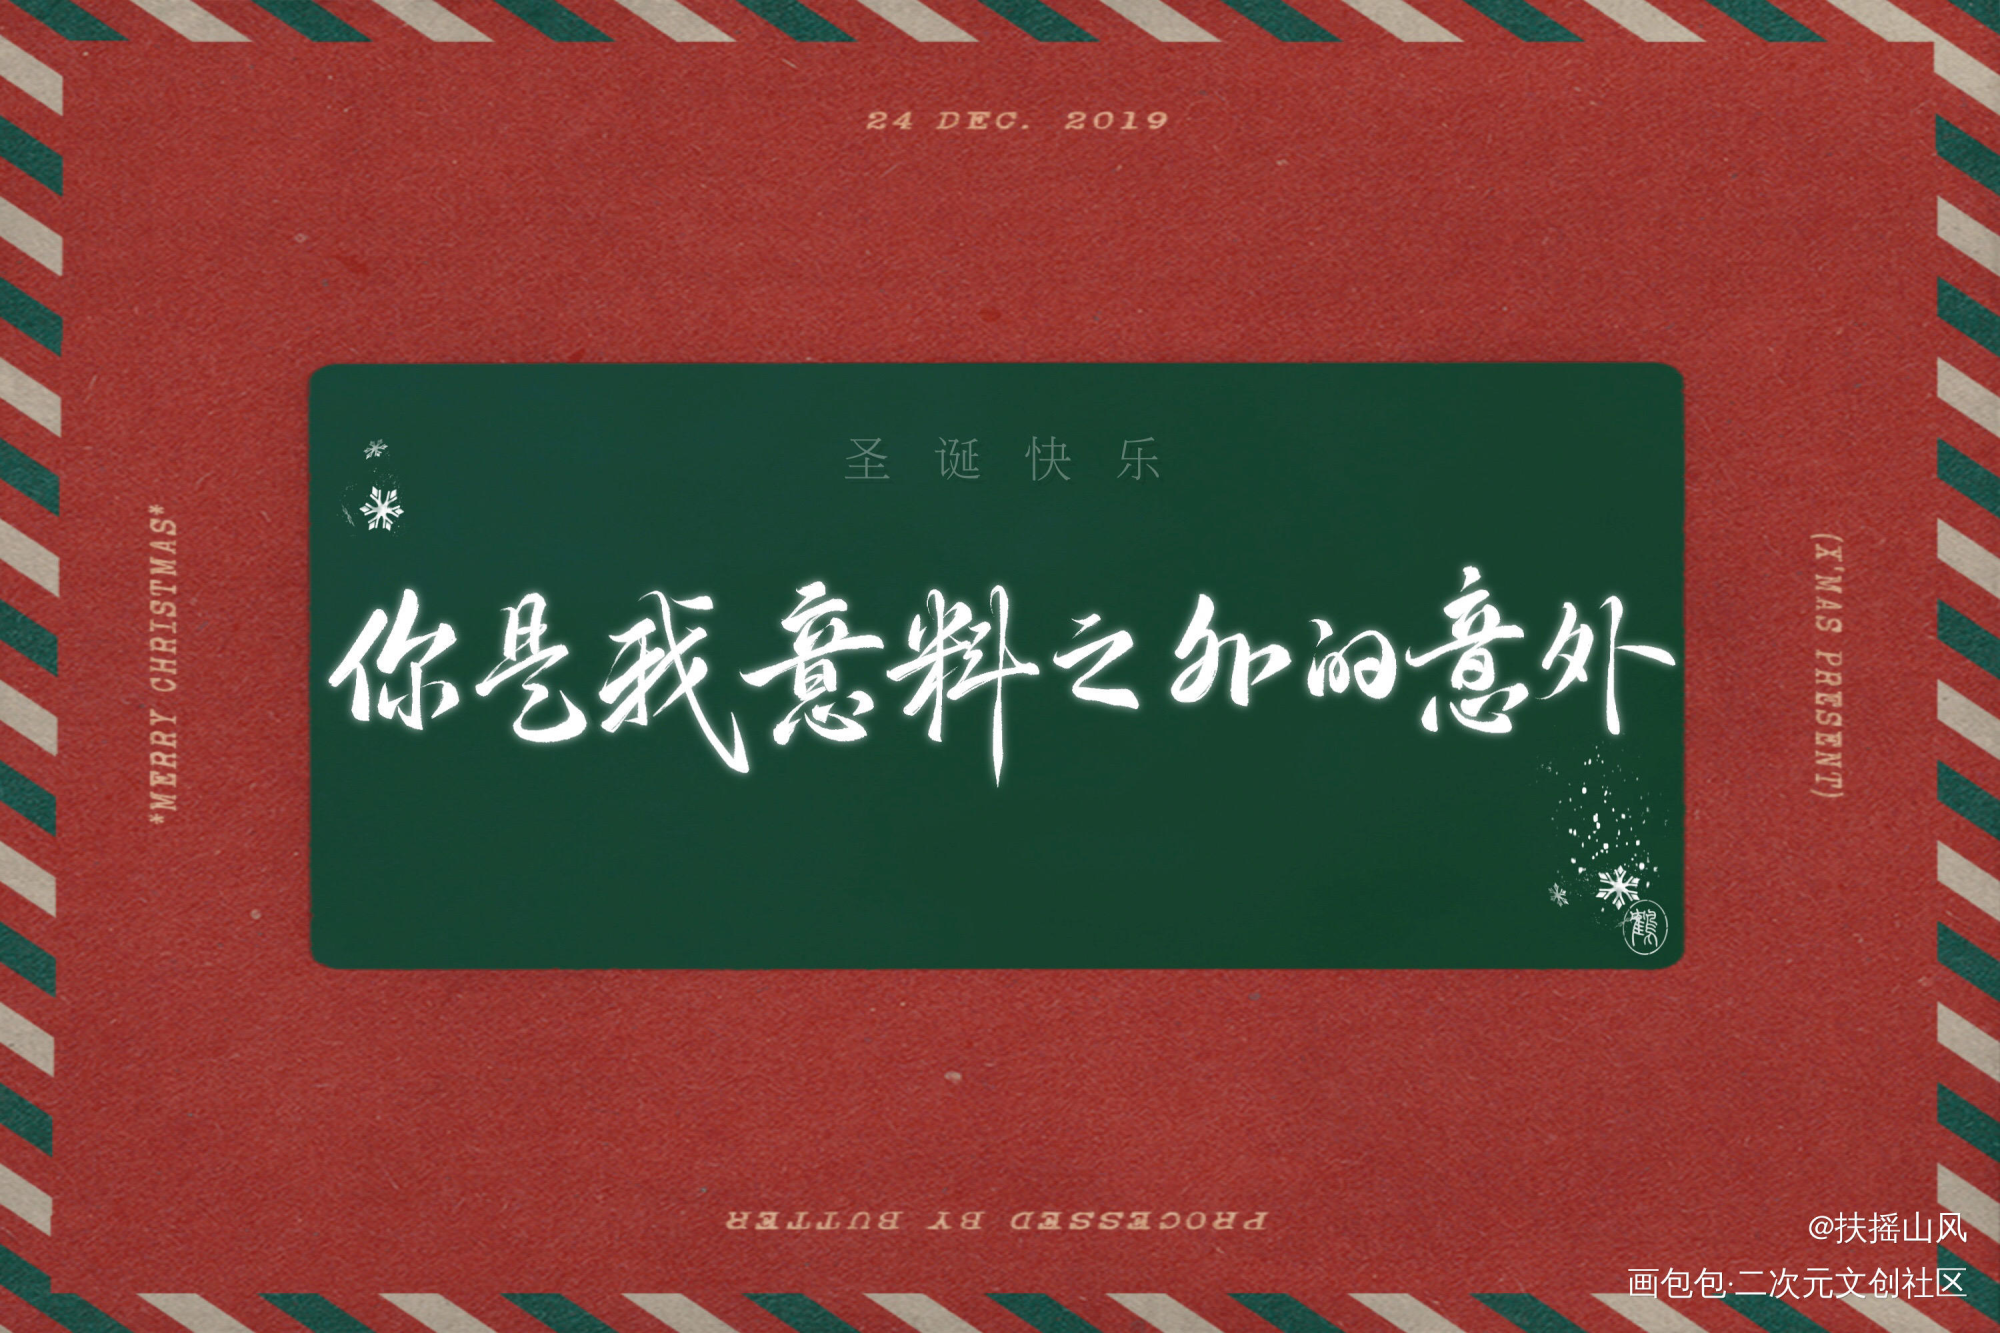 圣诞快乐_撒野蒋丞顾飞同人字体设计巫哲板写绘画作品